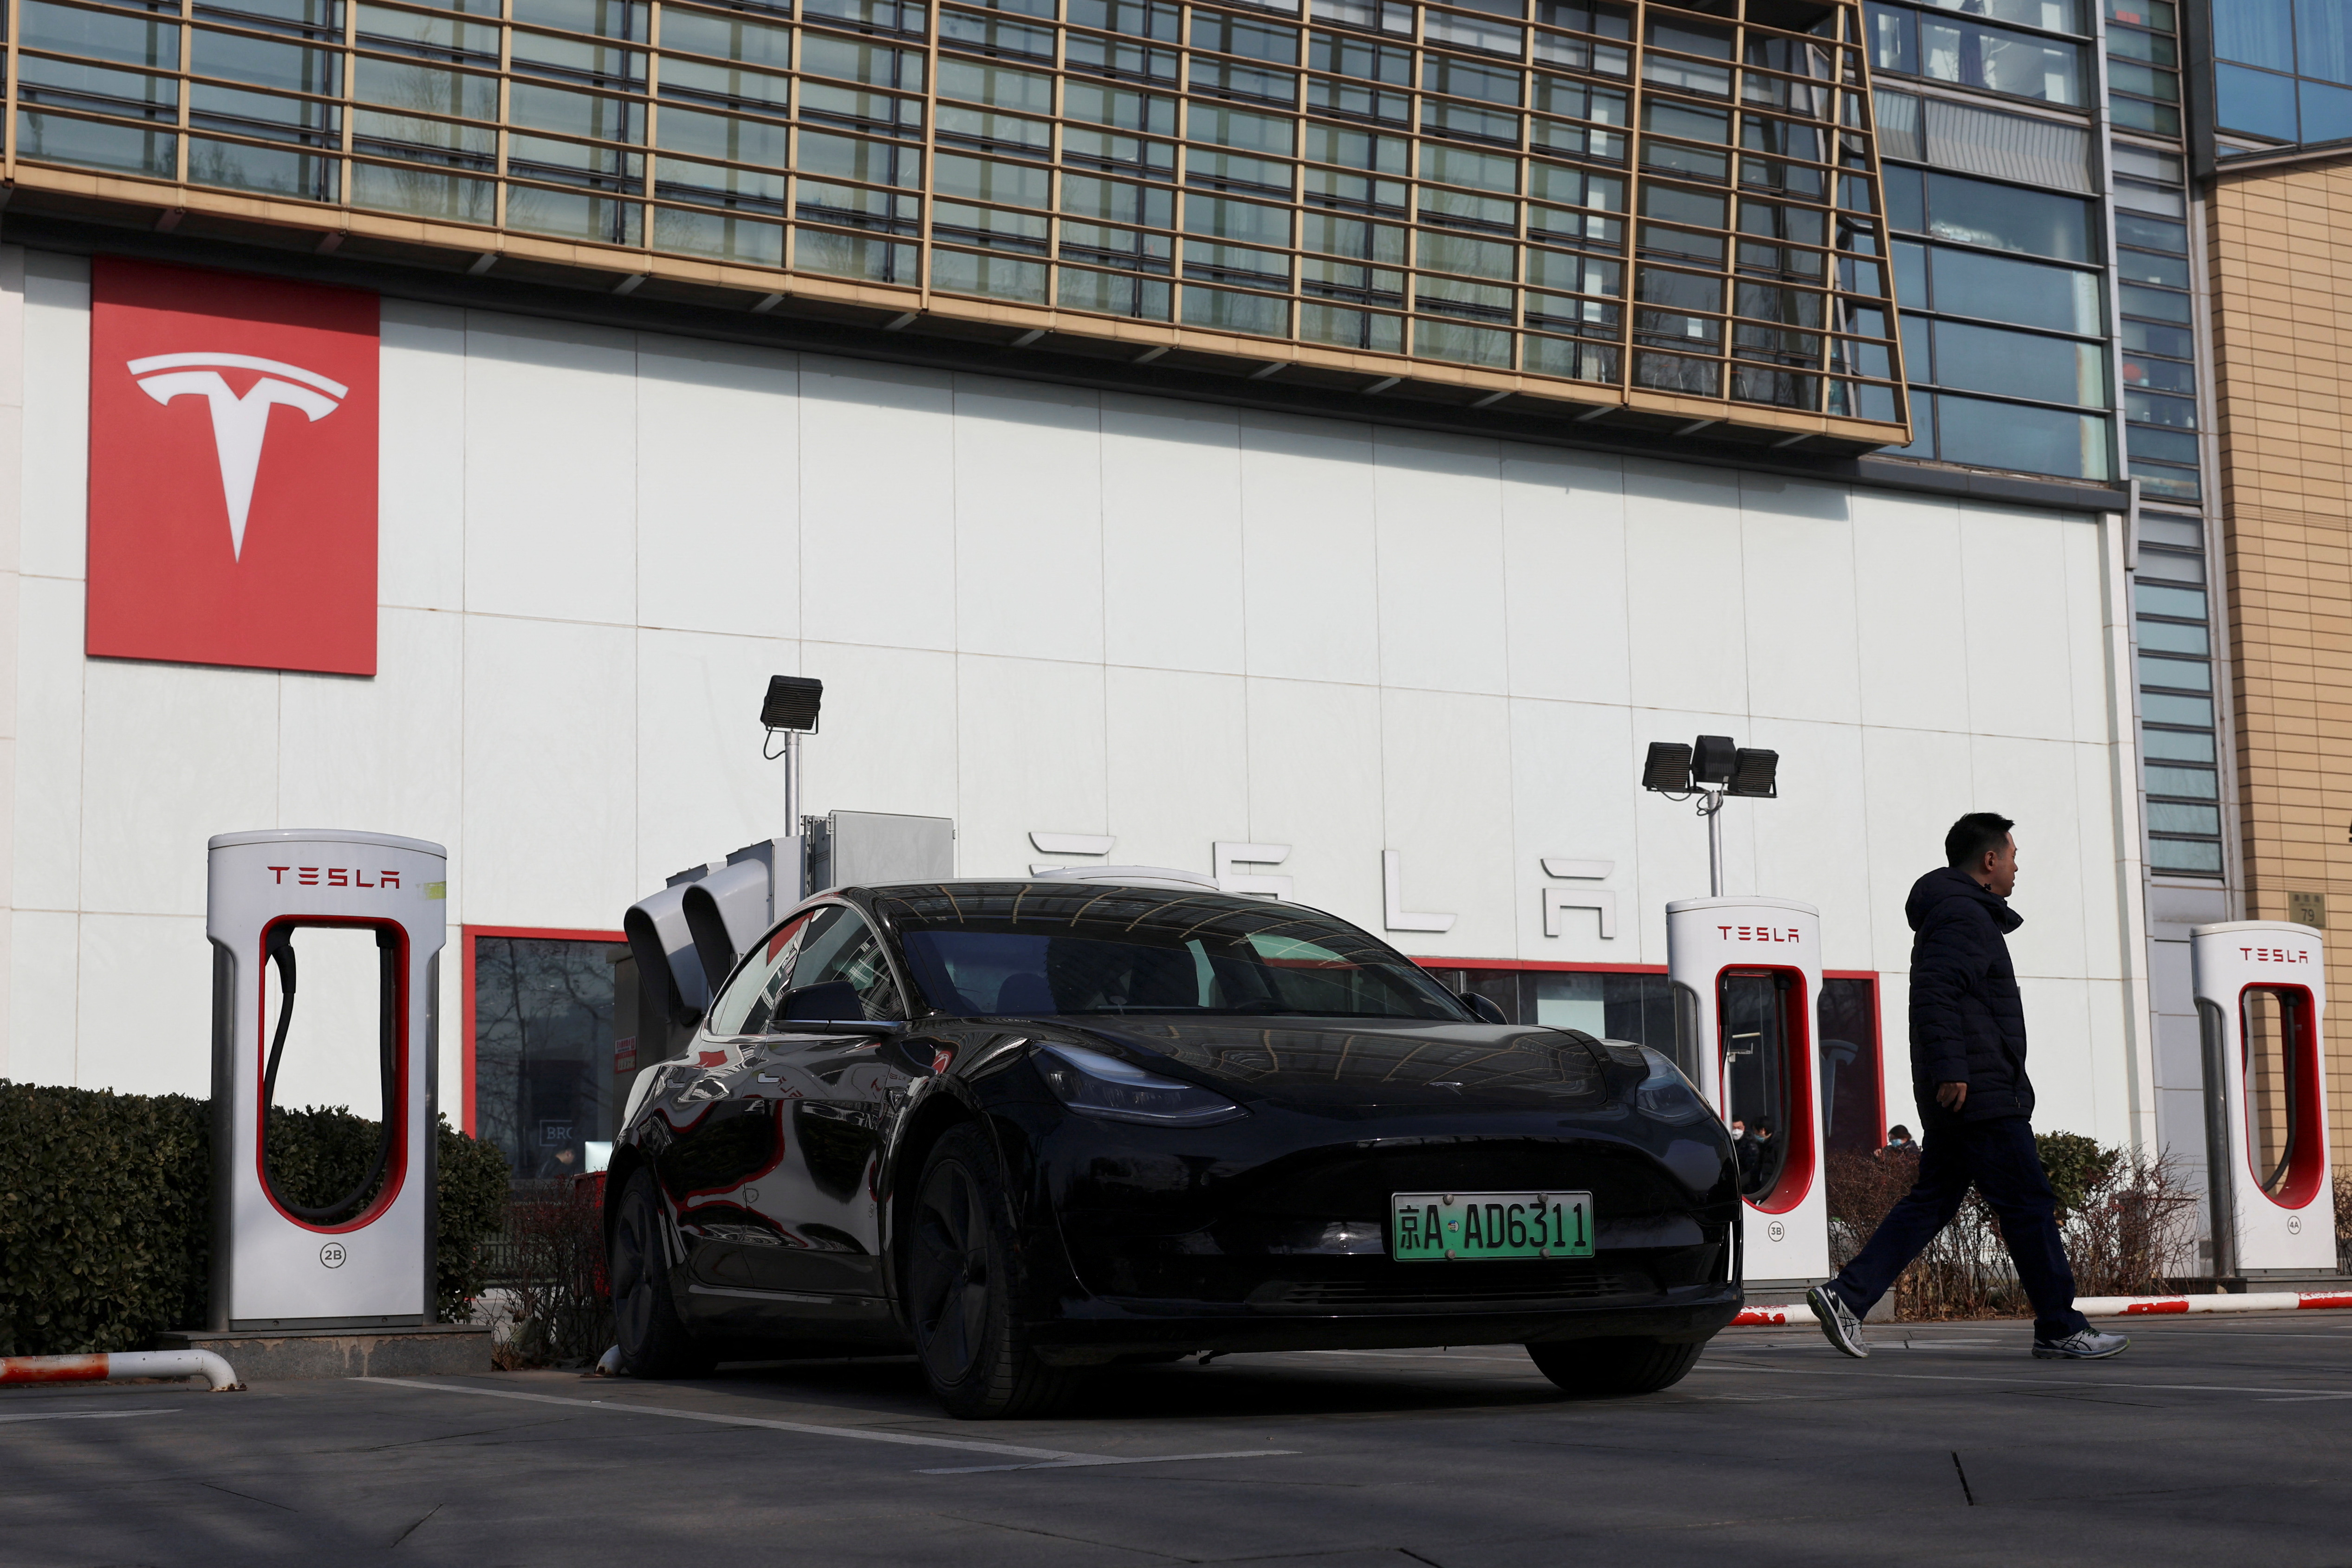 Tesla dealership in Beijing